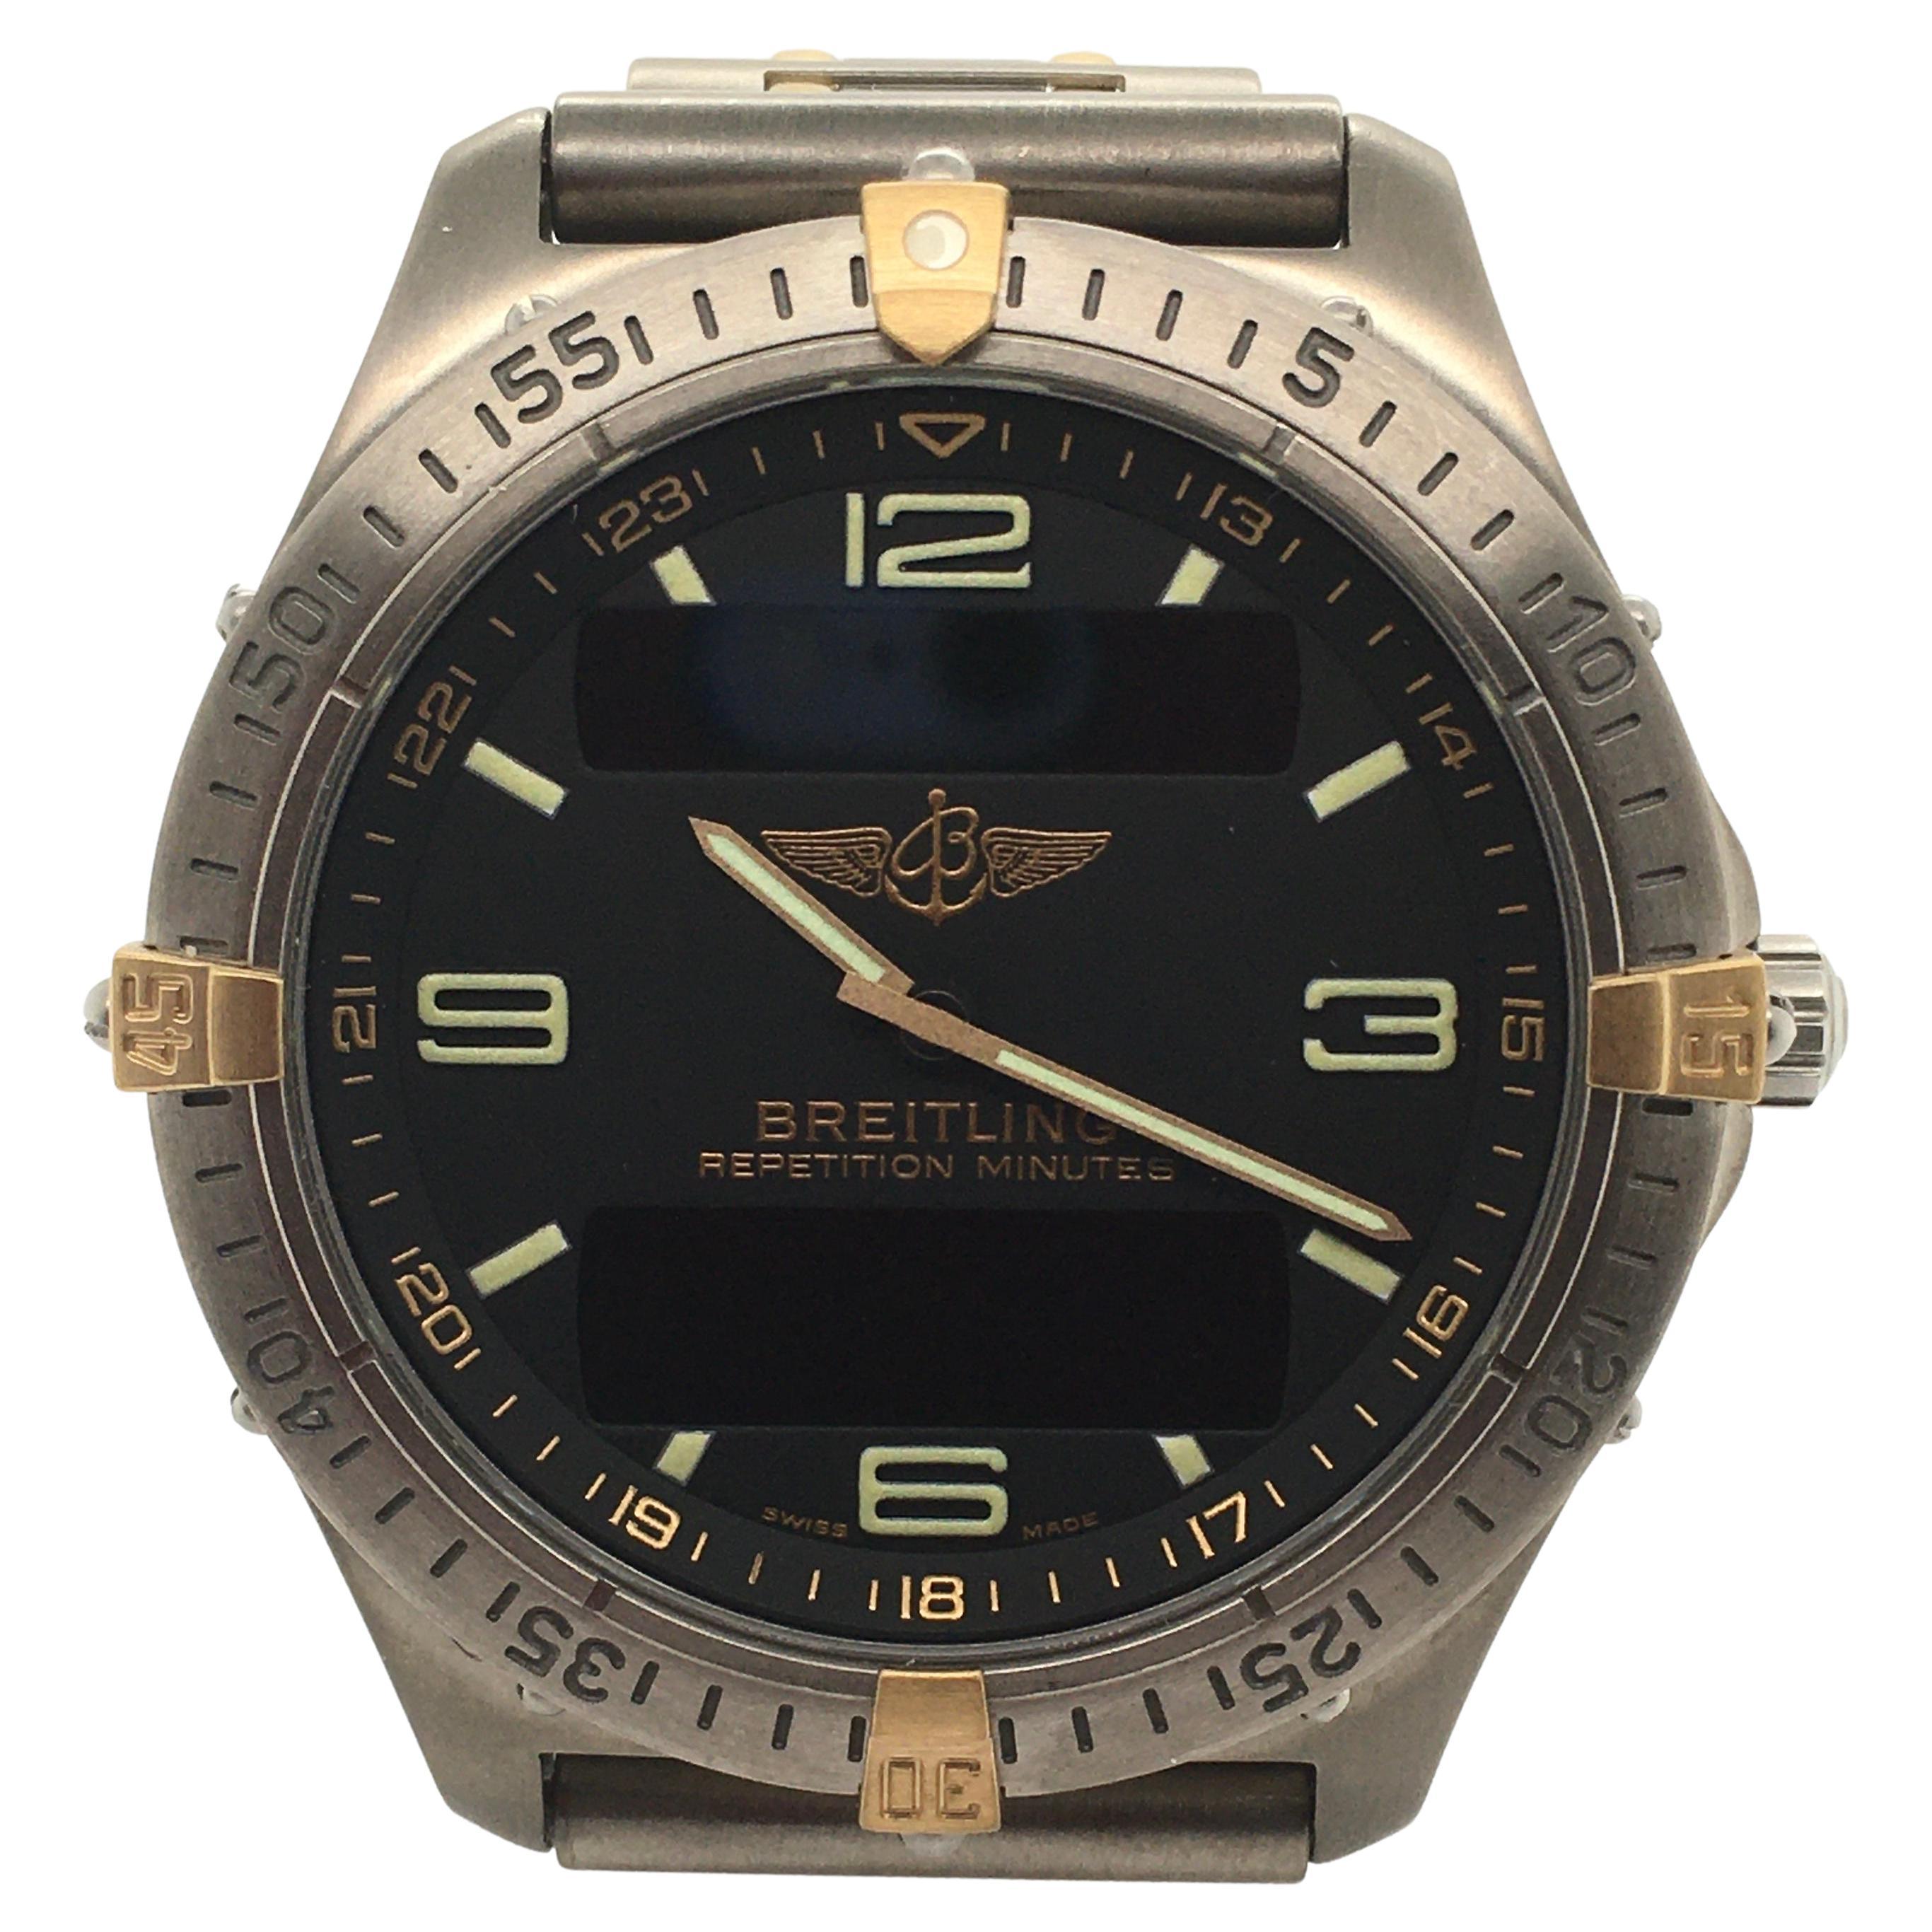 Breitling Aerospace 100m Titanium Case & Bracelet W/ Black Dial Chronograph  For Sale